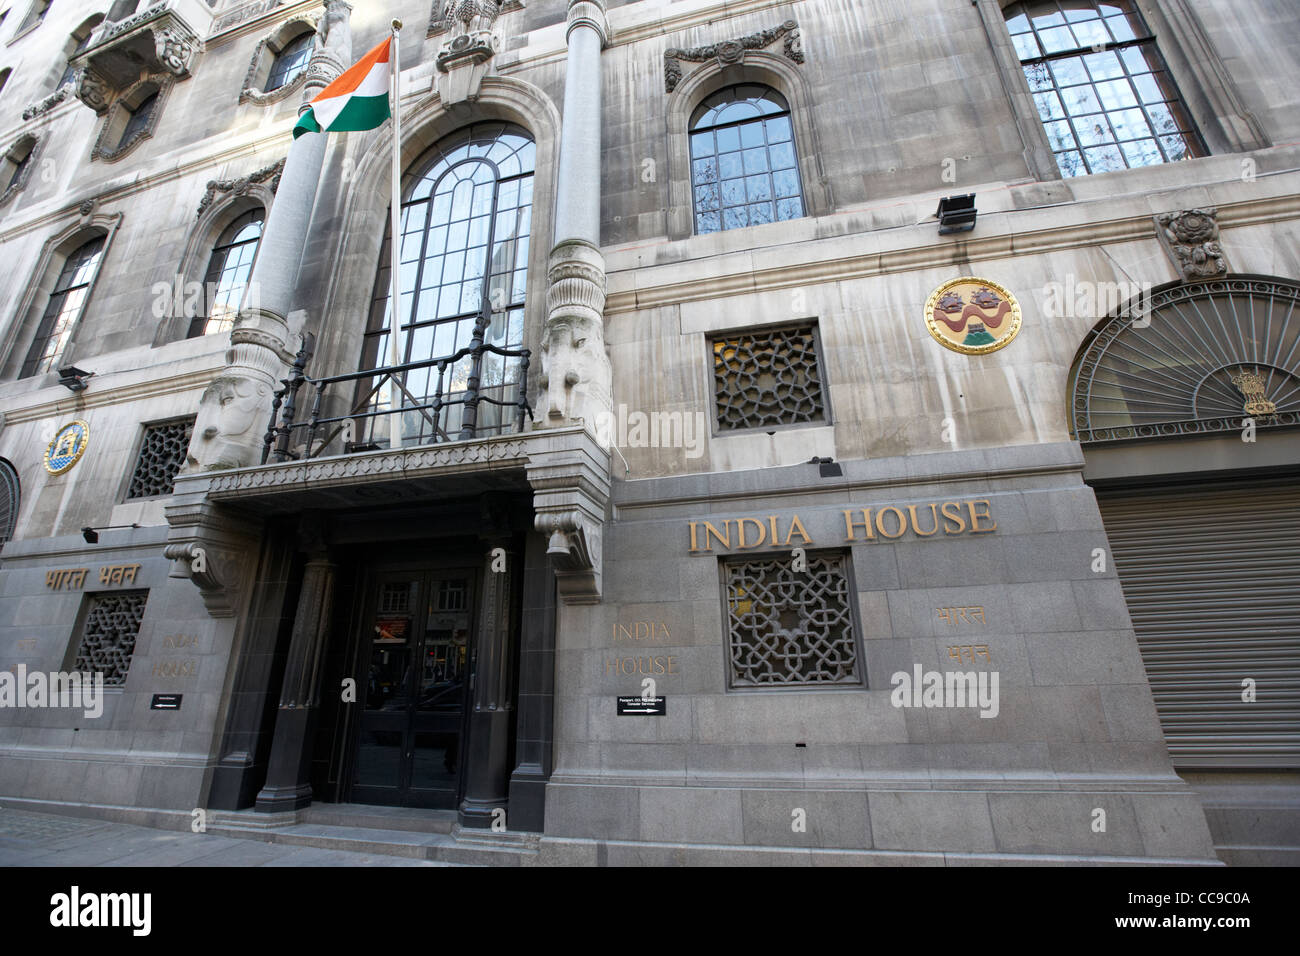 India house siège de la Haute commission indienne à Londres Angleterre Royaume-Uni Royaume-Uni Banque D'Images